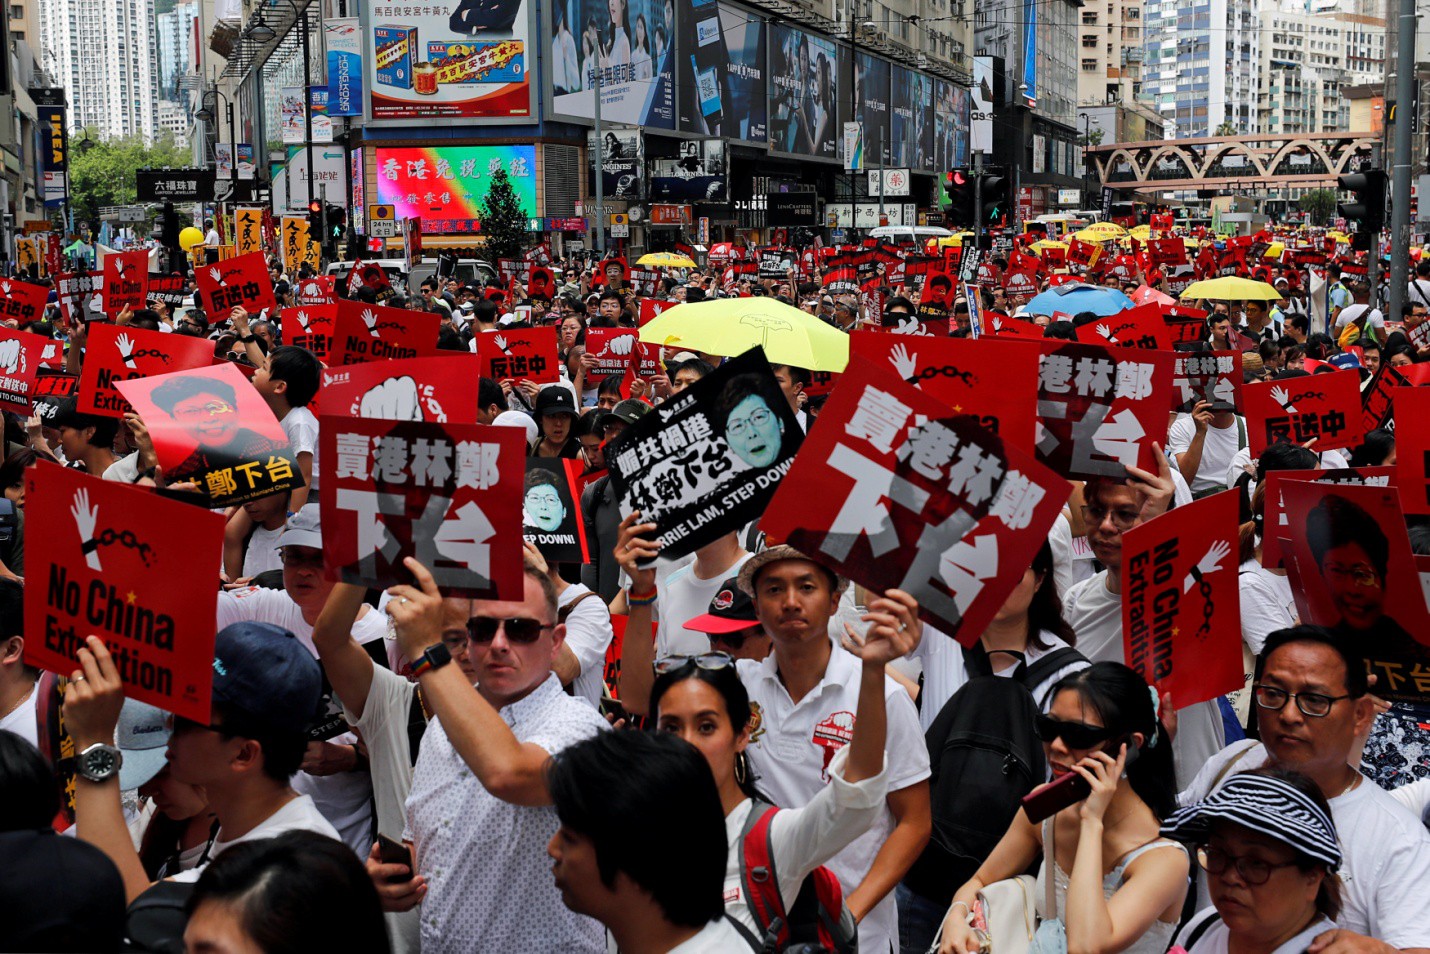 Biểu tình Hồng Kông: Hãy cùng chứng kiến những hình ảnh dũng cảm của những người dân tại Hồng Kông đang tỏ ra bất khuất trong cuộc biểu tình chống lại áp đặt chính trị và tôn giáo. Tận mắt thấy sức mạnh của đồng lòng và trí tuệ tạo nên một sự kiện lịch sử!